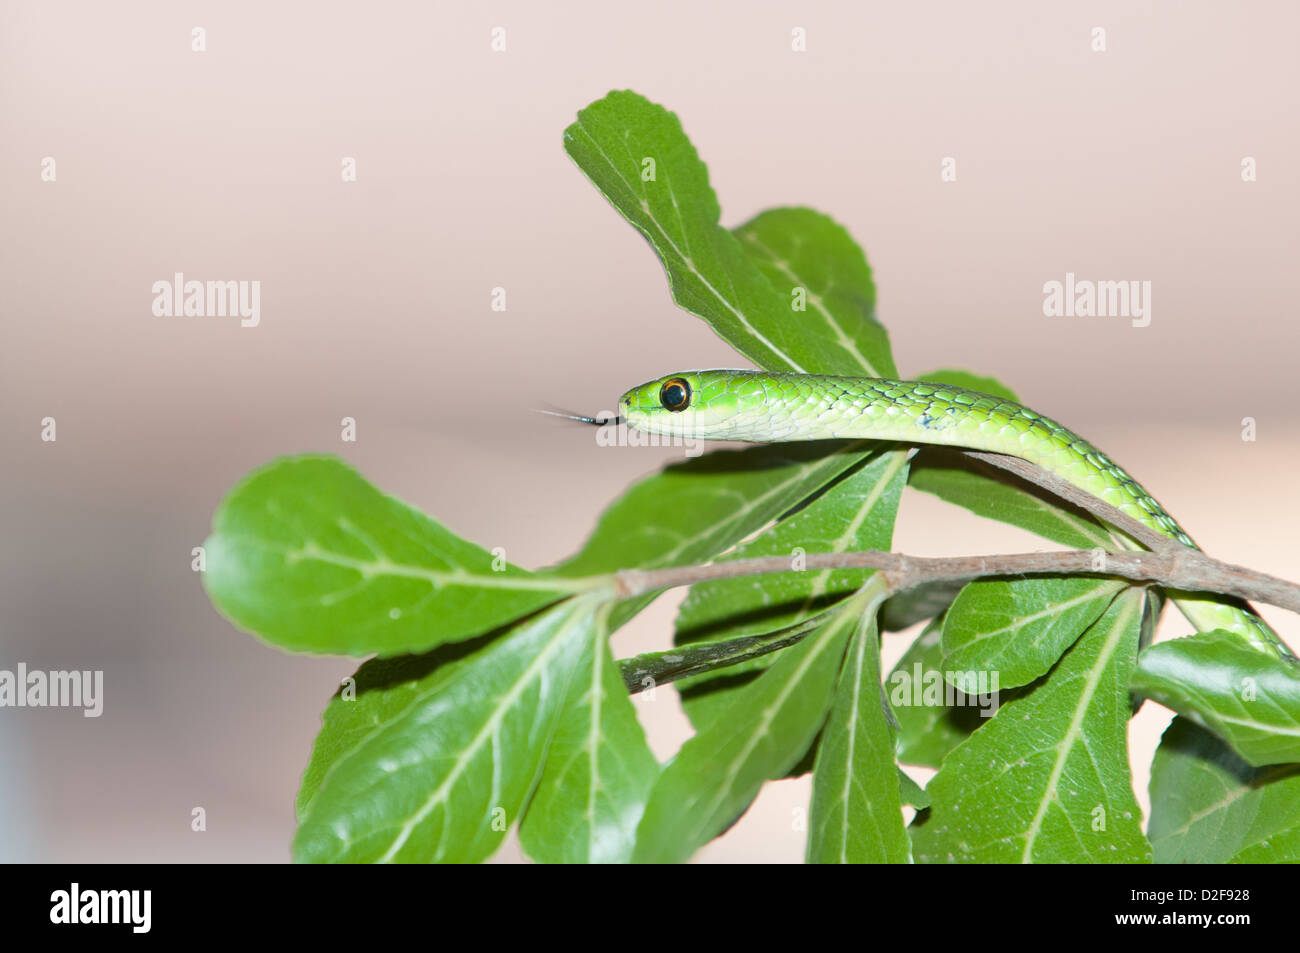 Battersby's green snake se déplaçant dans le feuillage, près du bord de la branche vu de son côté gauche avec la langue, il l'air d'échantillonnage Banque D'Images